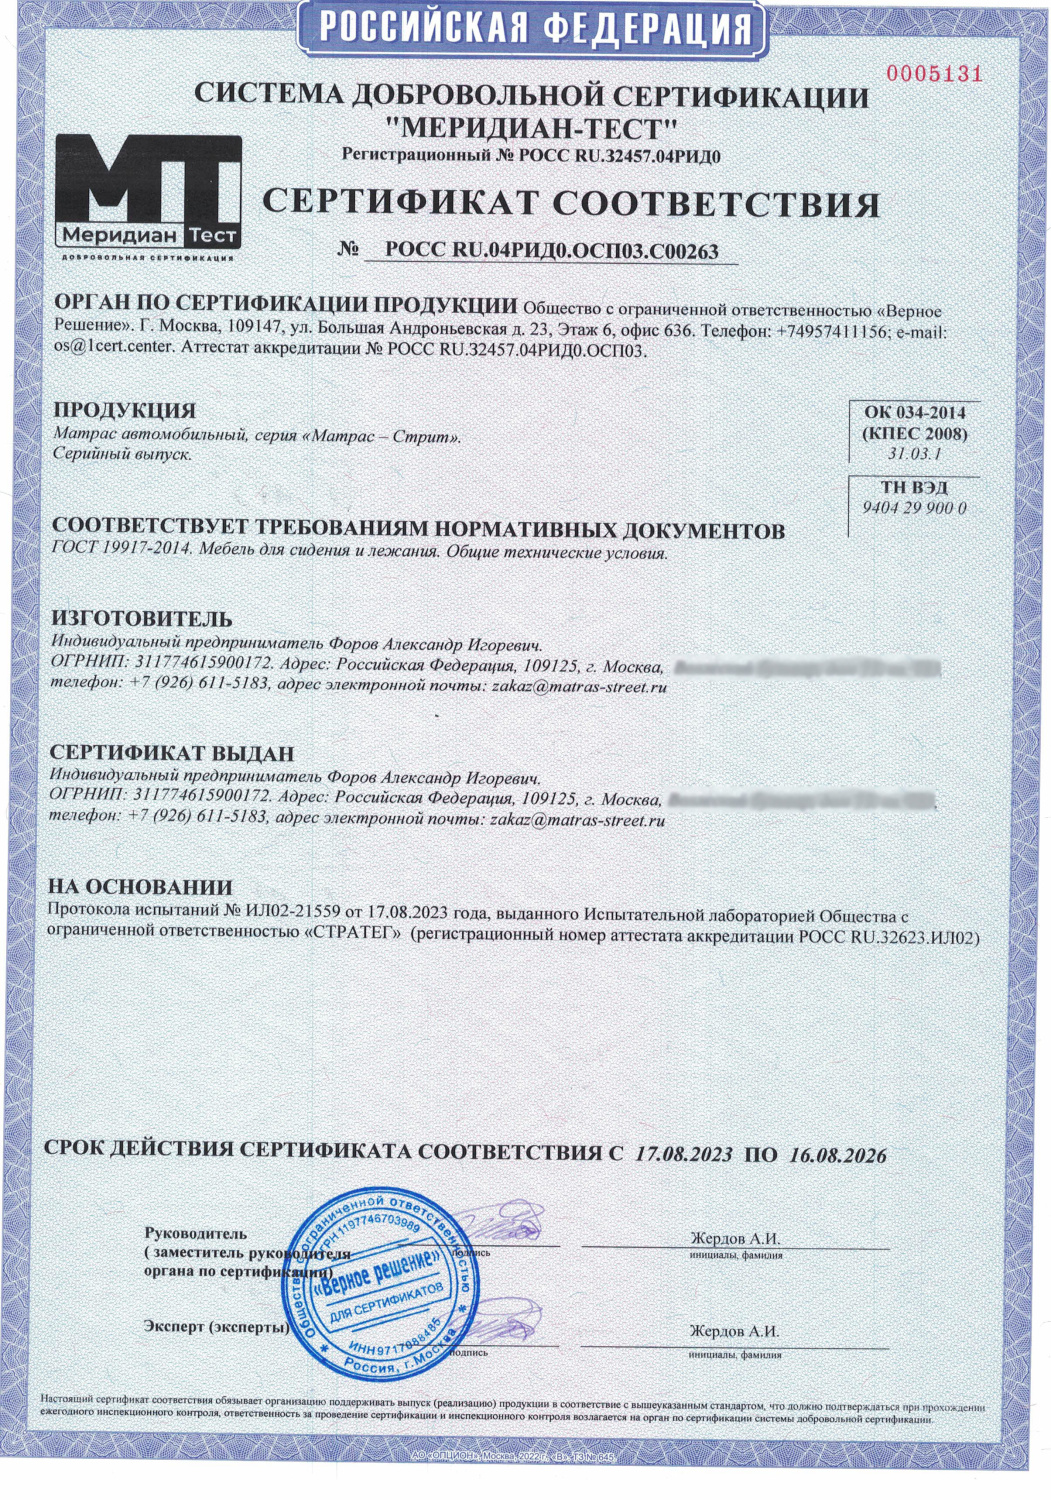 Сертификат соответствия Matras Street